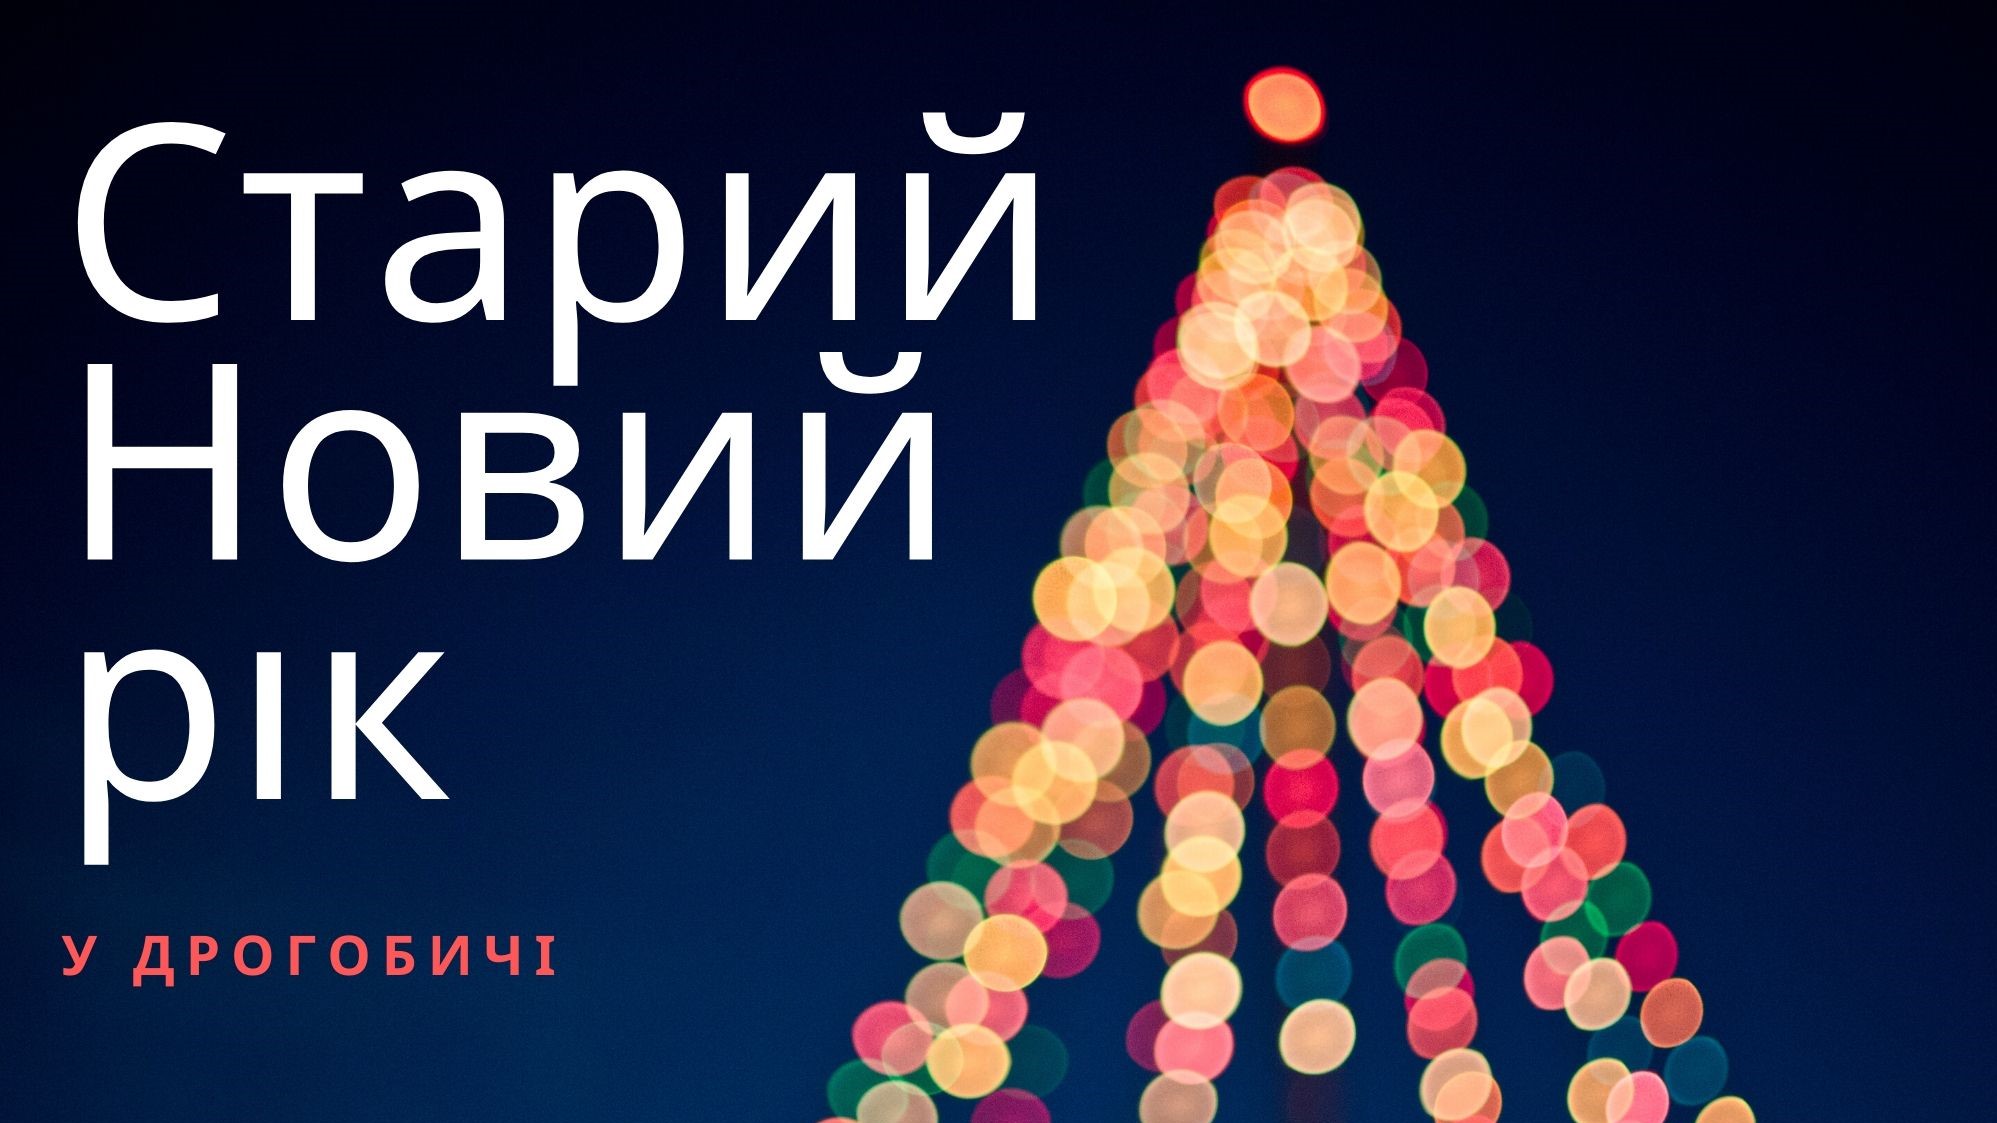 Як відзначатимуть Старий Новий рік у Дрогобичі?